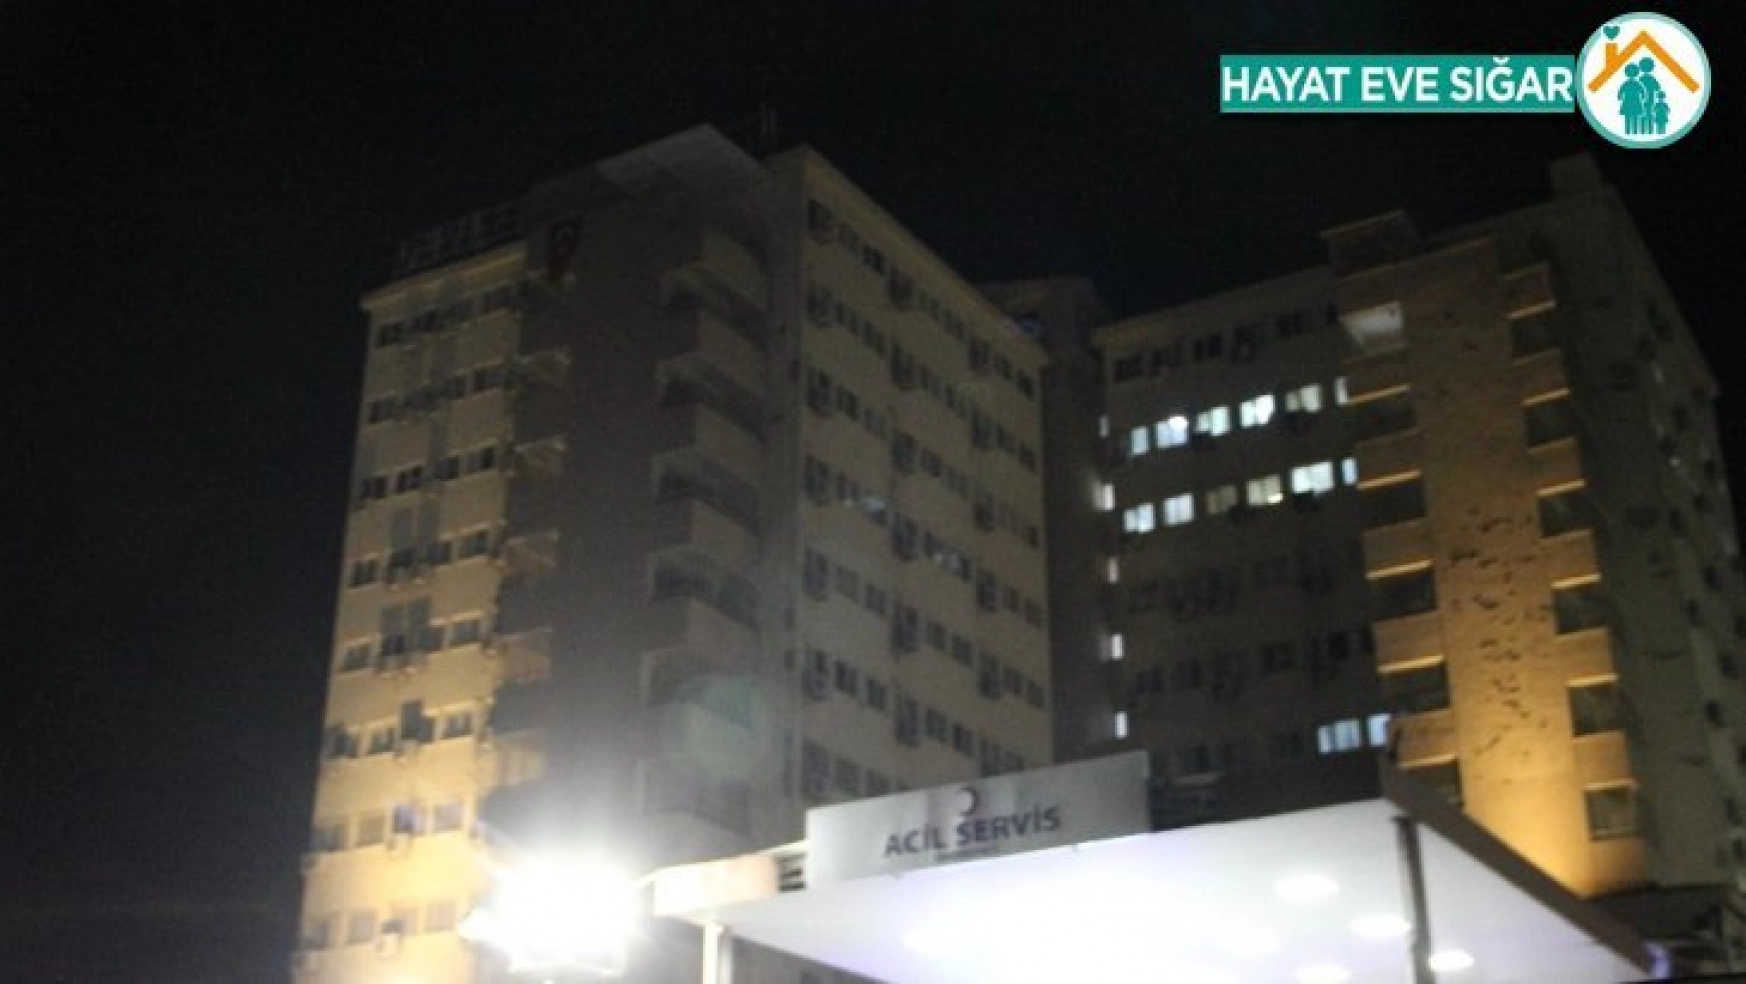 Diyarbakır'da silahlı kavga hastaneye taşındı: 1 ölü, 5 ağır yaralı